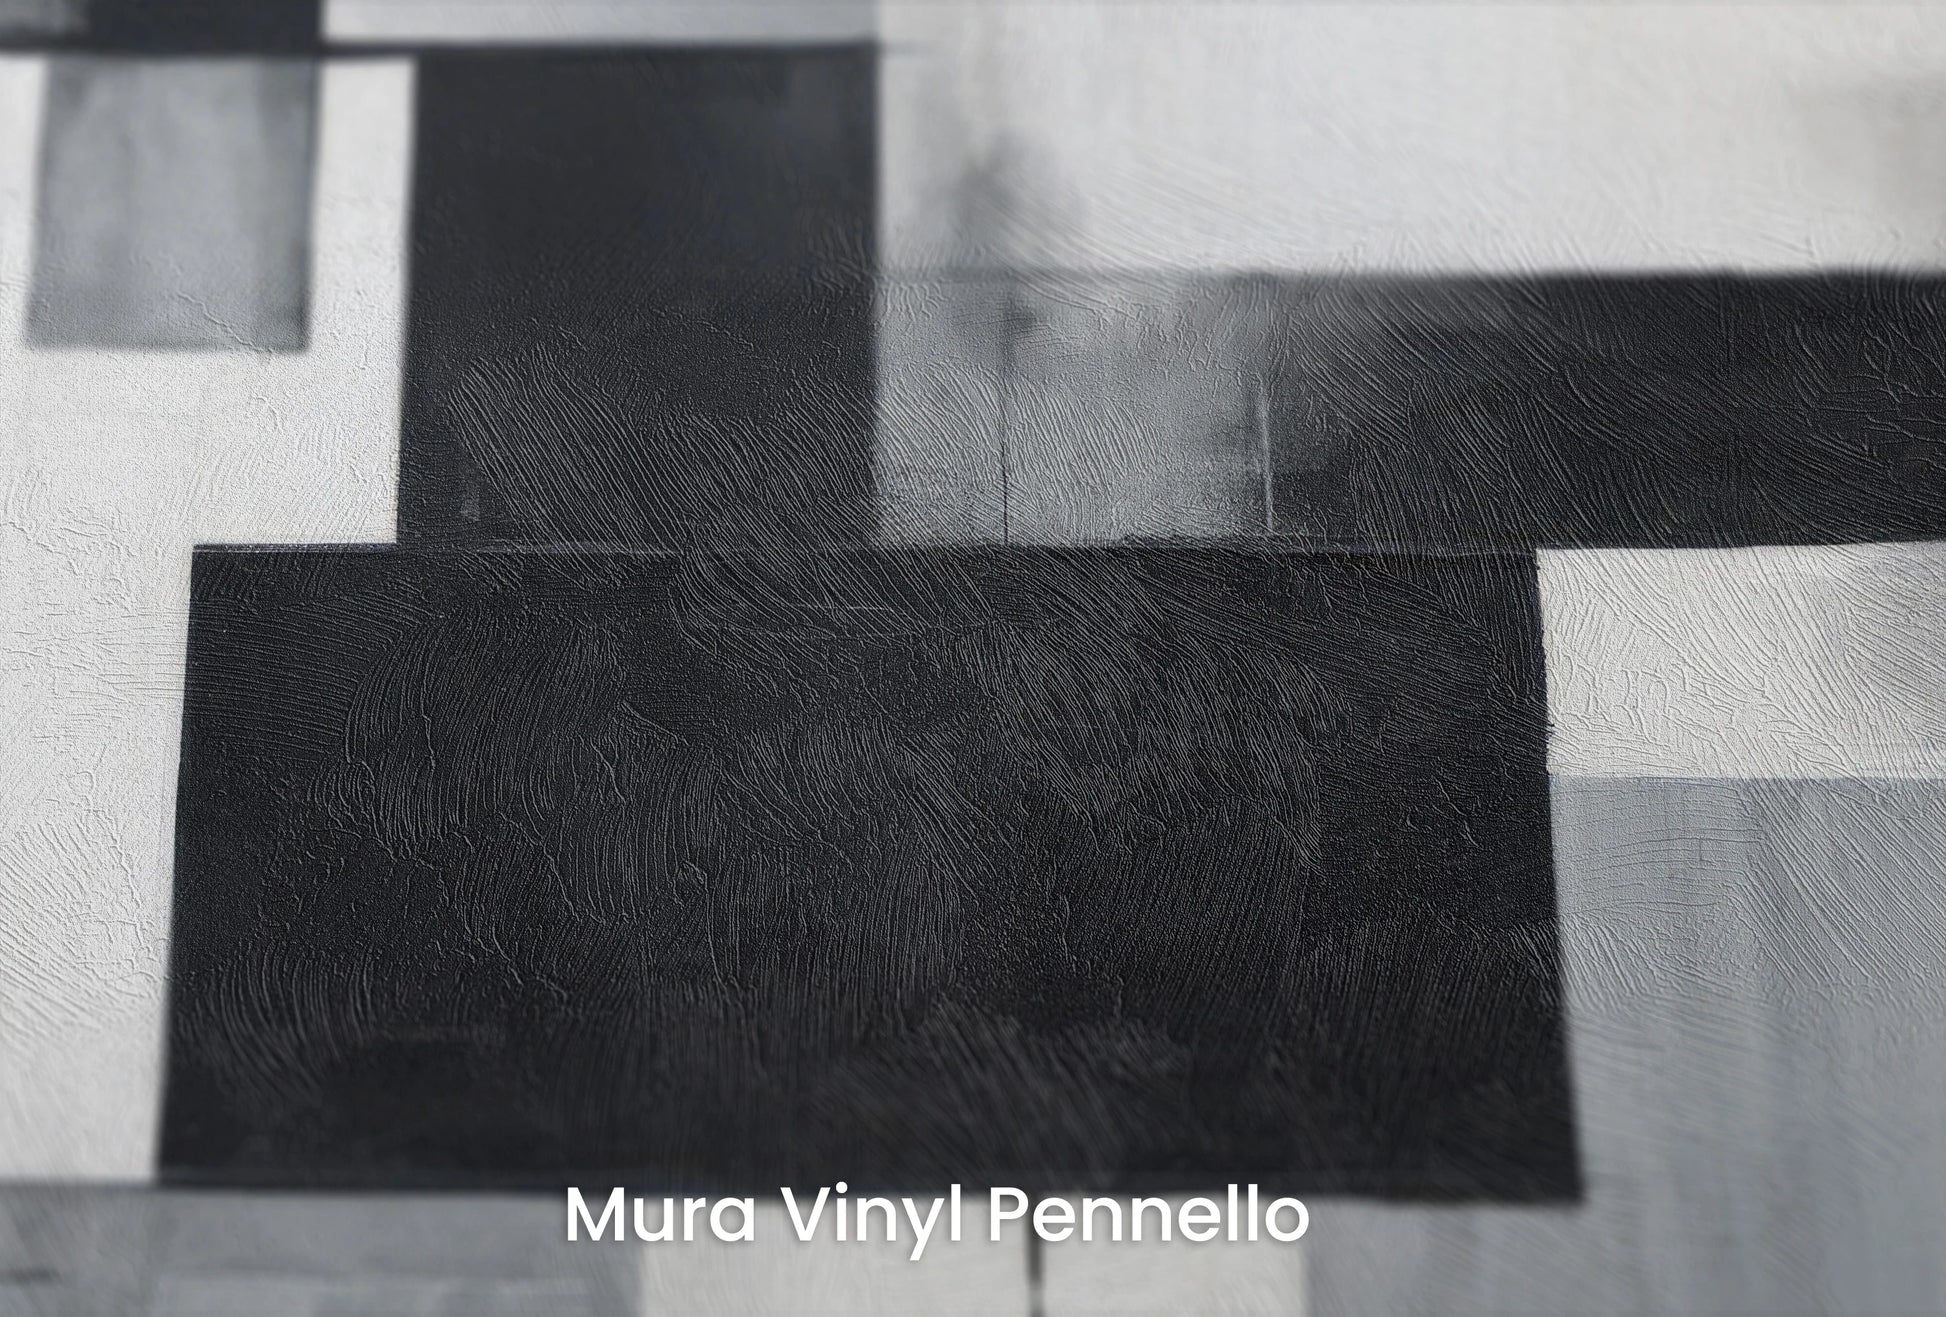 Zbliżenie na artystyczną fototapetę o nazwie Monochrome Harmony na podłożu Mura Vinyl Pennello - faktura pociągnięć pędzla malarskiego.